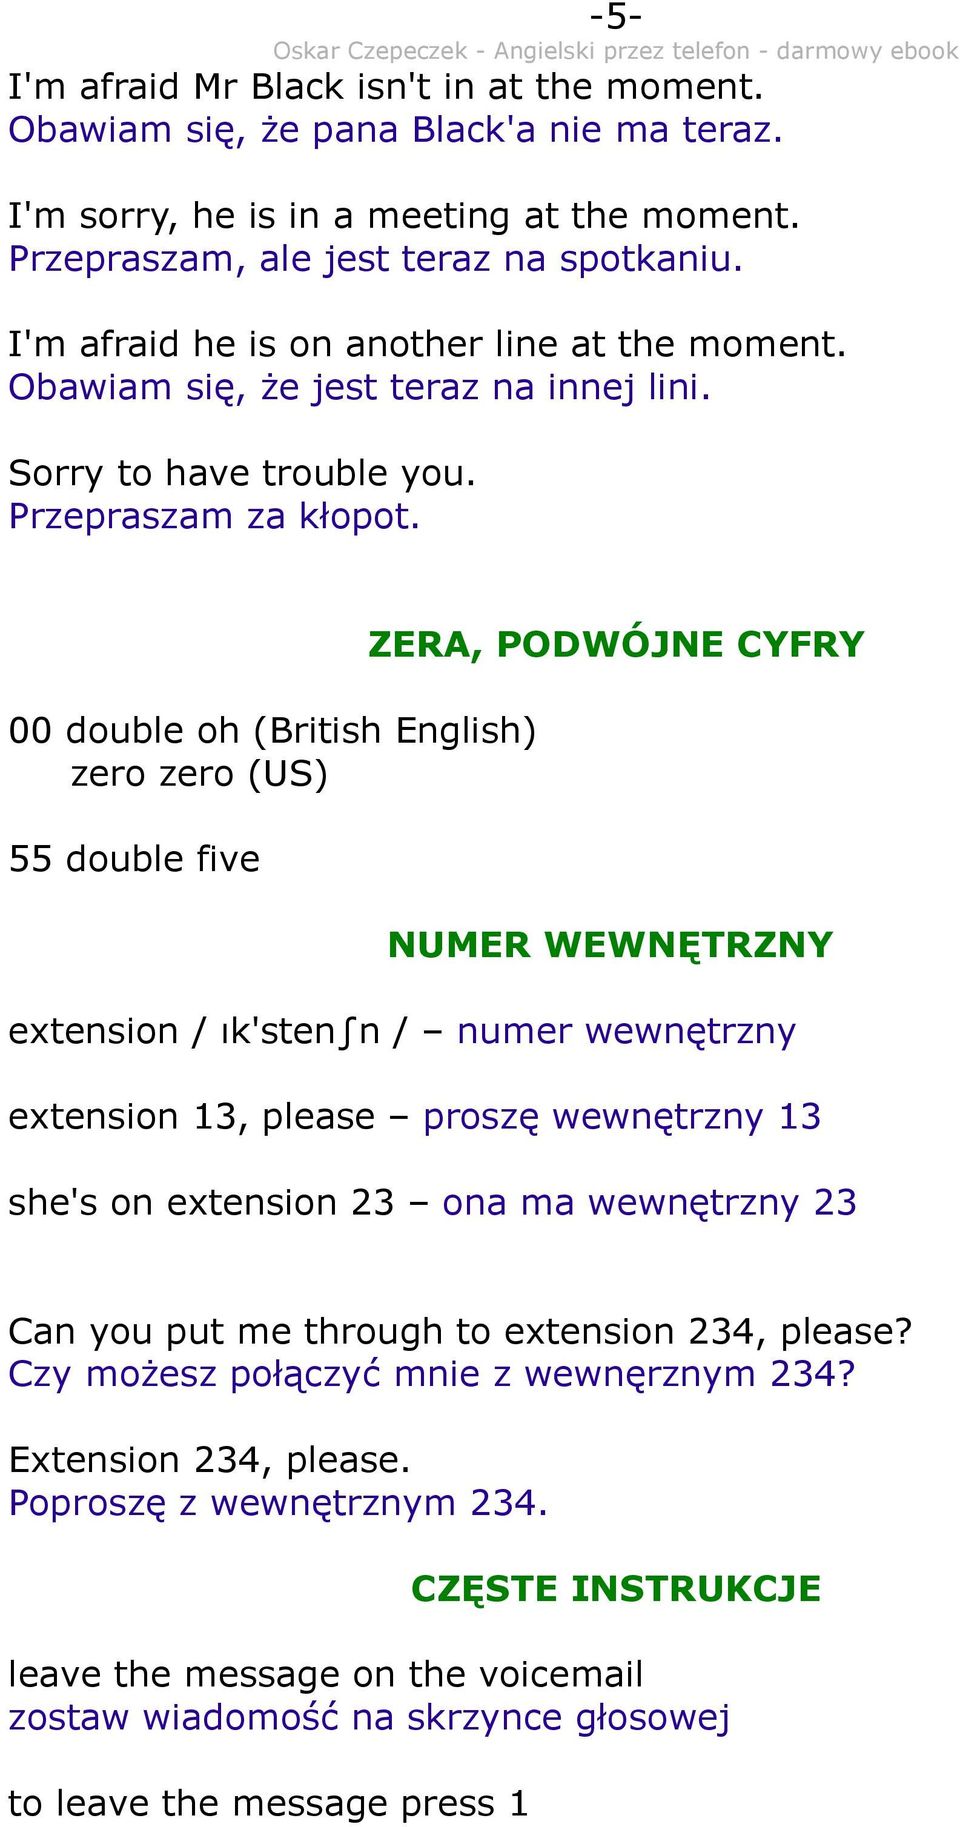 00 double oh (British English) zero zero (US) 55 double five ZERA, PODWÓJNE CYFRY NUMER WEWNĘTRZNY extension / ık'sten n / numer wewnętrzny extension 13, please proszę wewnętrzny 13 she's on